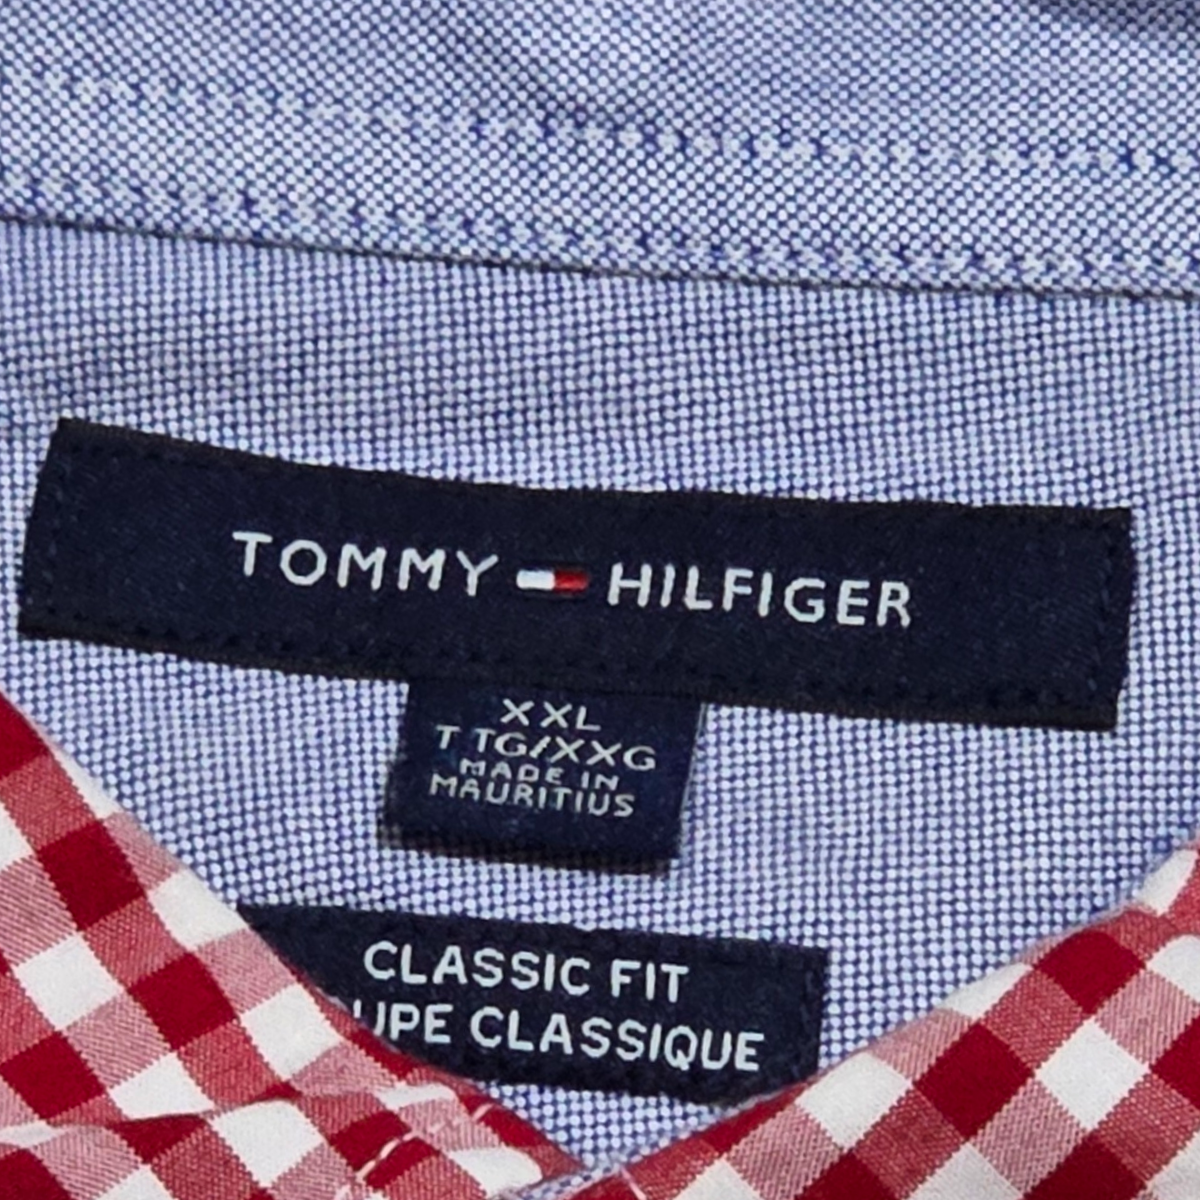 Camisa Tommy Hilfiger 2xl Classic Fit Cuadro Rojo Y Blanco